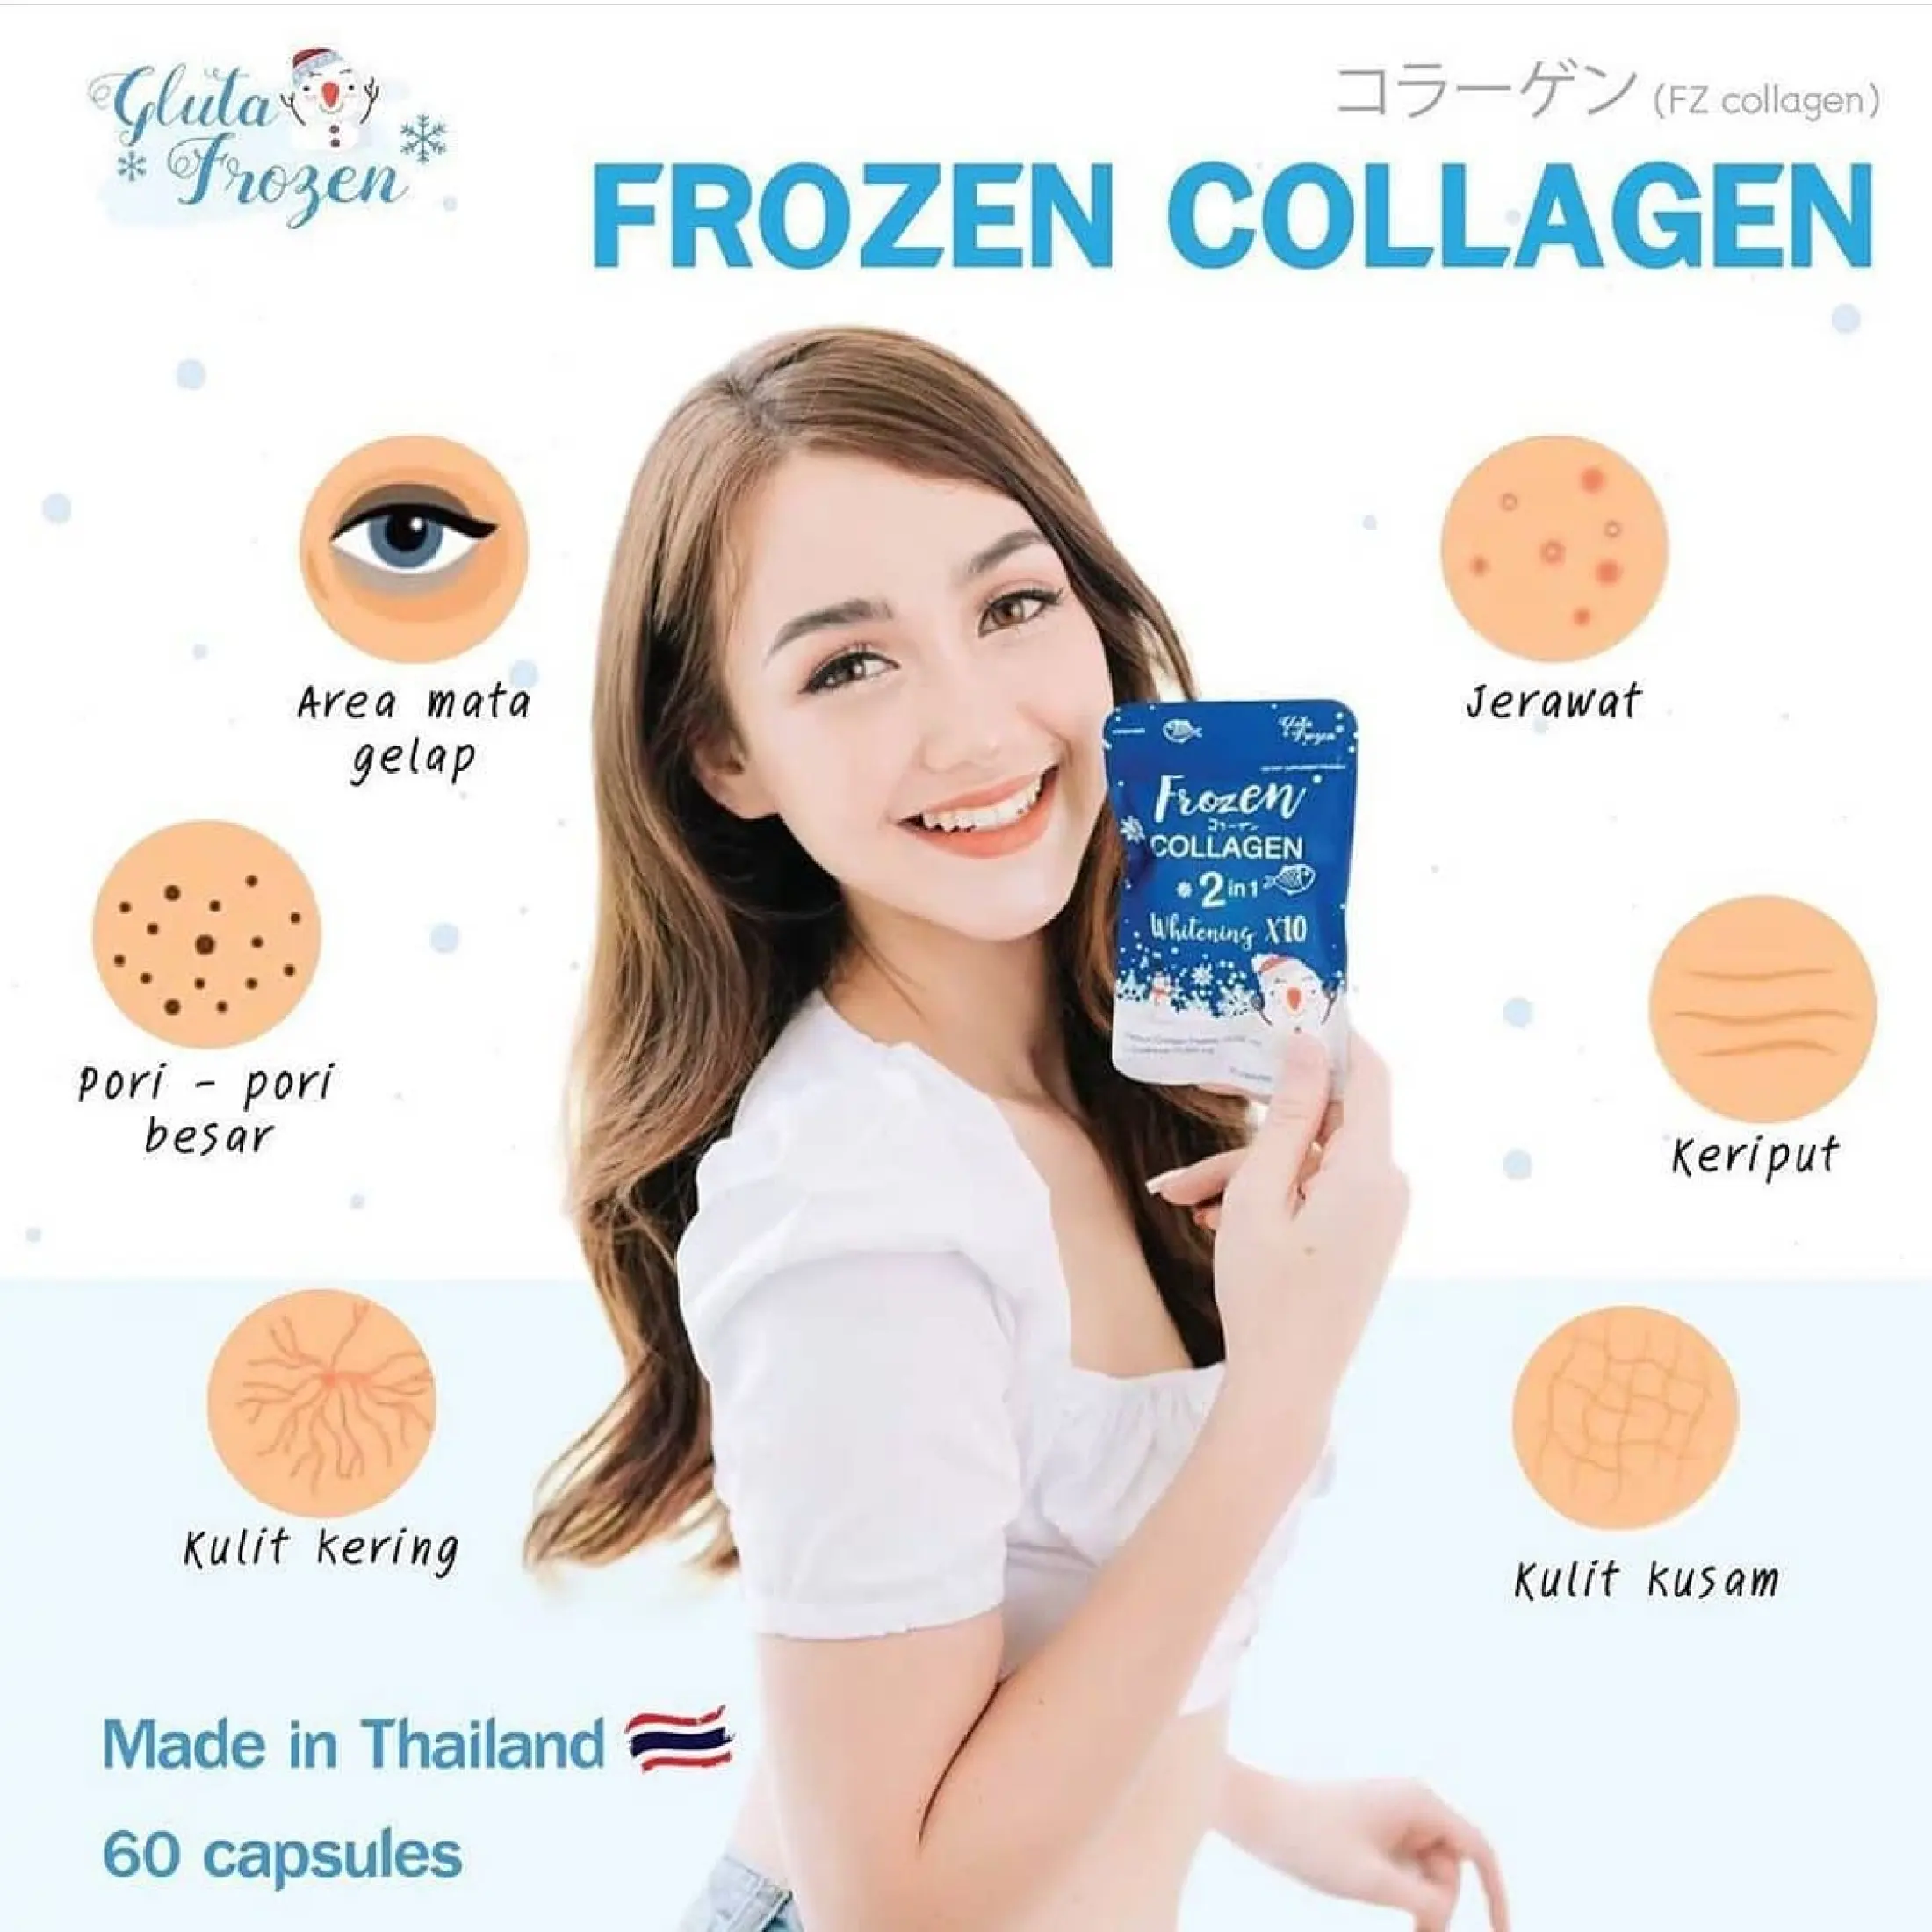 Aturan minum frozen collagen